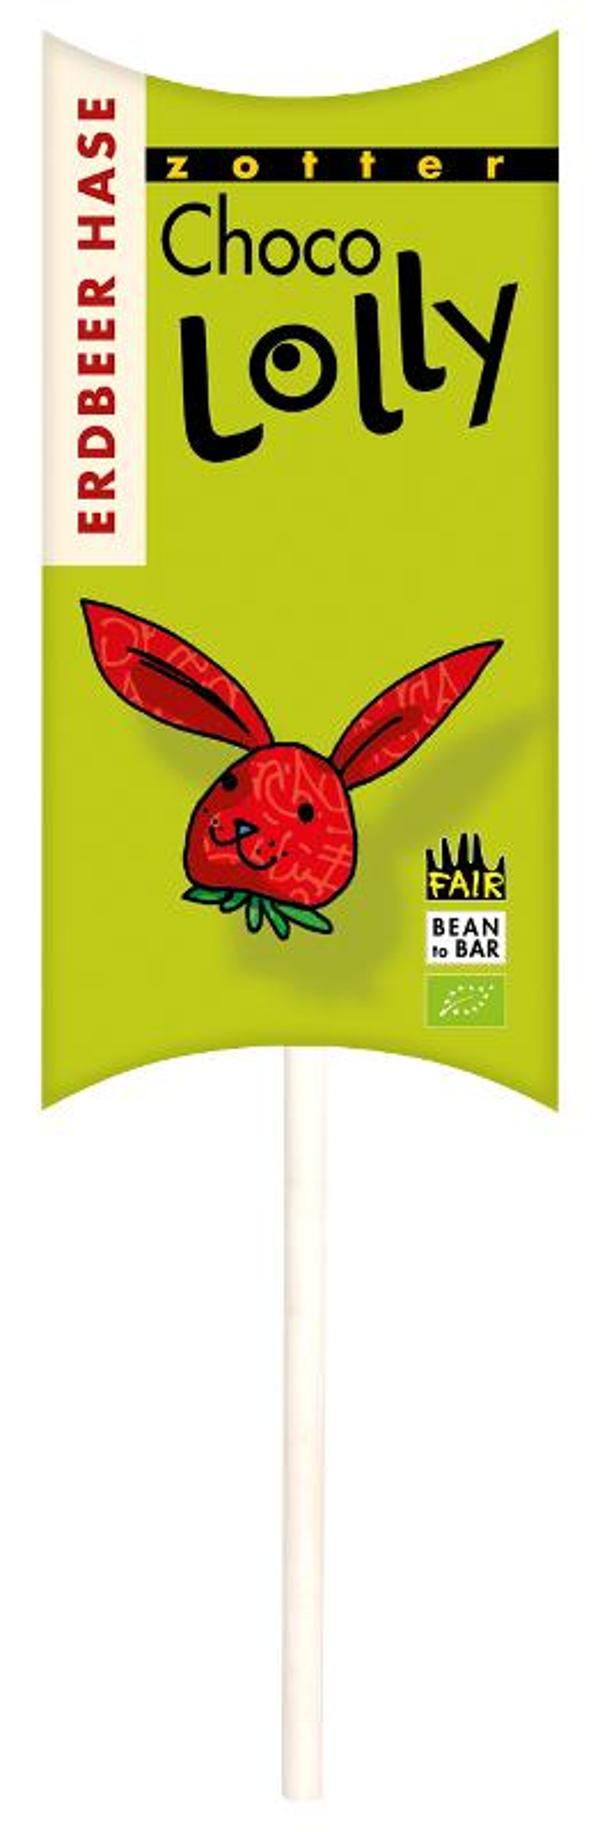 Produktfoto zu LollyTop - Erdbeer-Hase Schokoladenlolly Zotter 20g